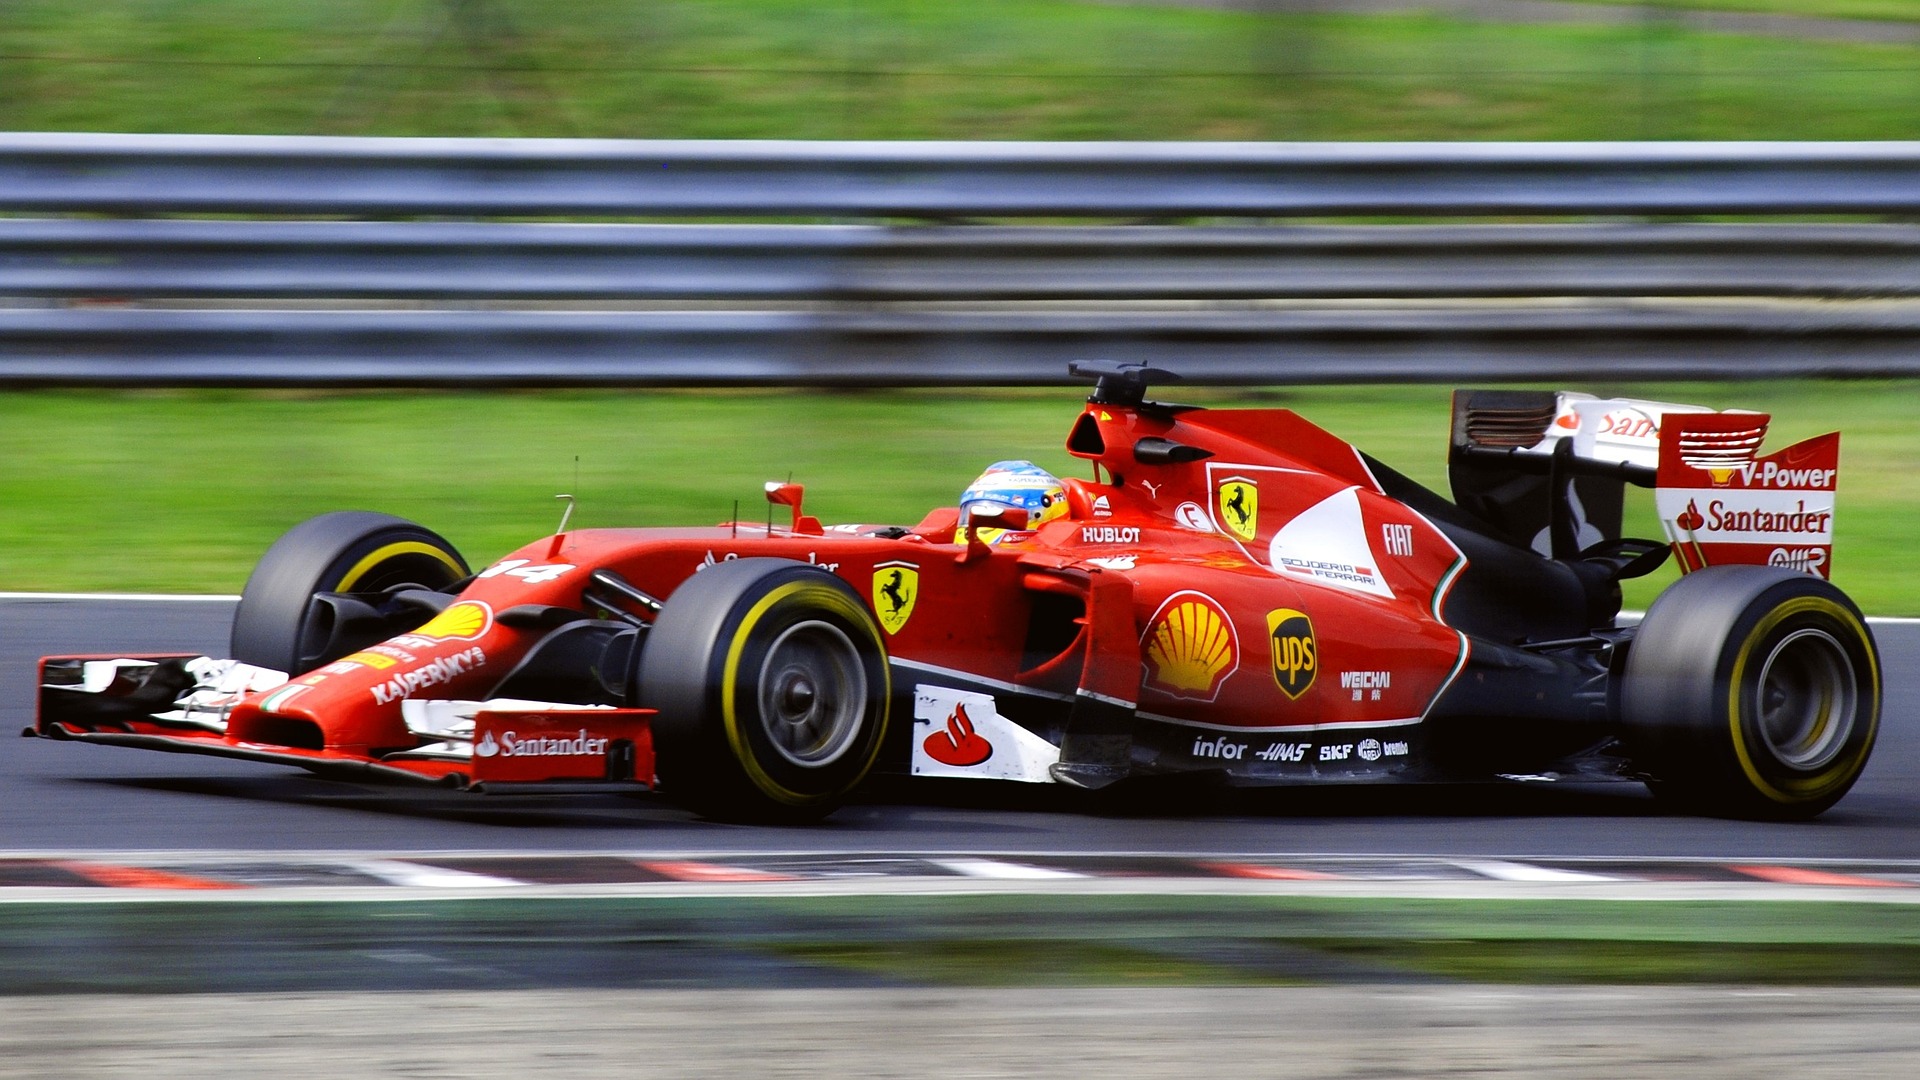 Pojazd wyścigowy Ferrari Formuła 1. AI przeprowadziła wywiad z Michaelem Schumacherem (źródło: Pixabay)